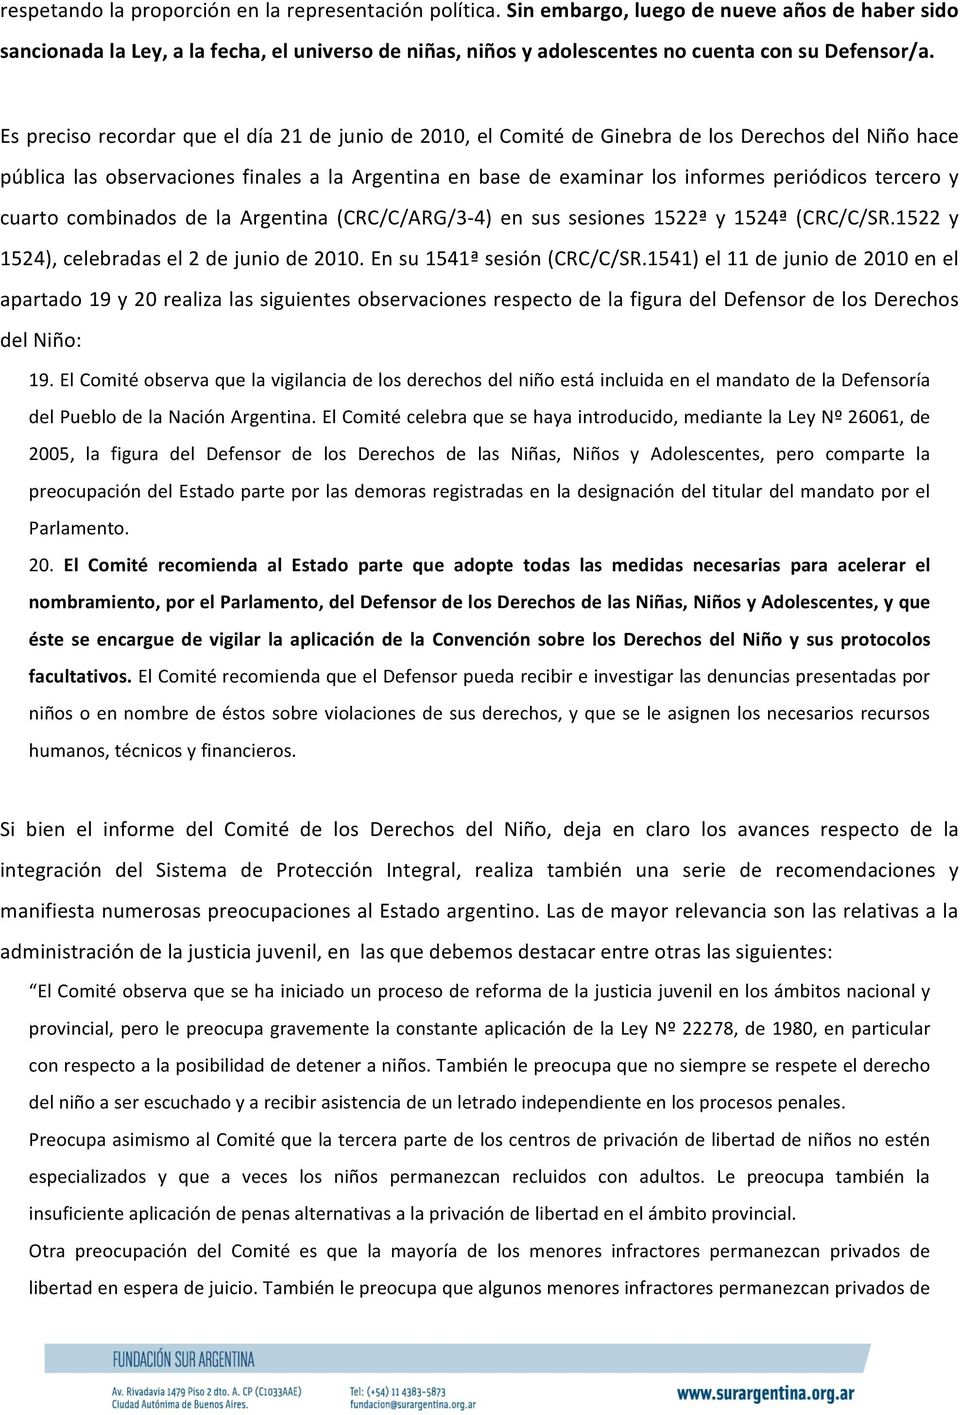 Es preciso recordar que el día 21 de junio de 2010, el Comité de Ginebra de los Derechos del Niño hace pública las observaciones finales a la Argentina en base de examinar los informes periódicos